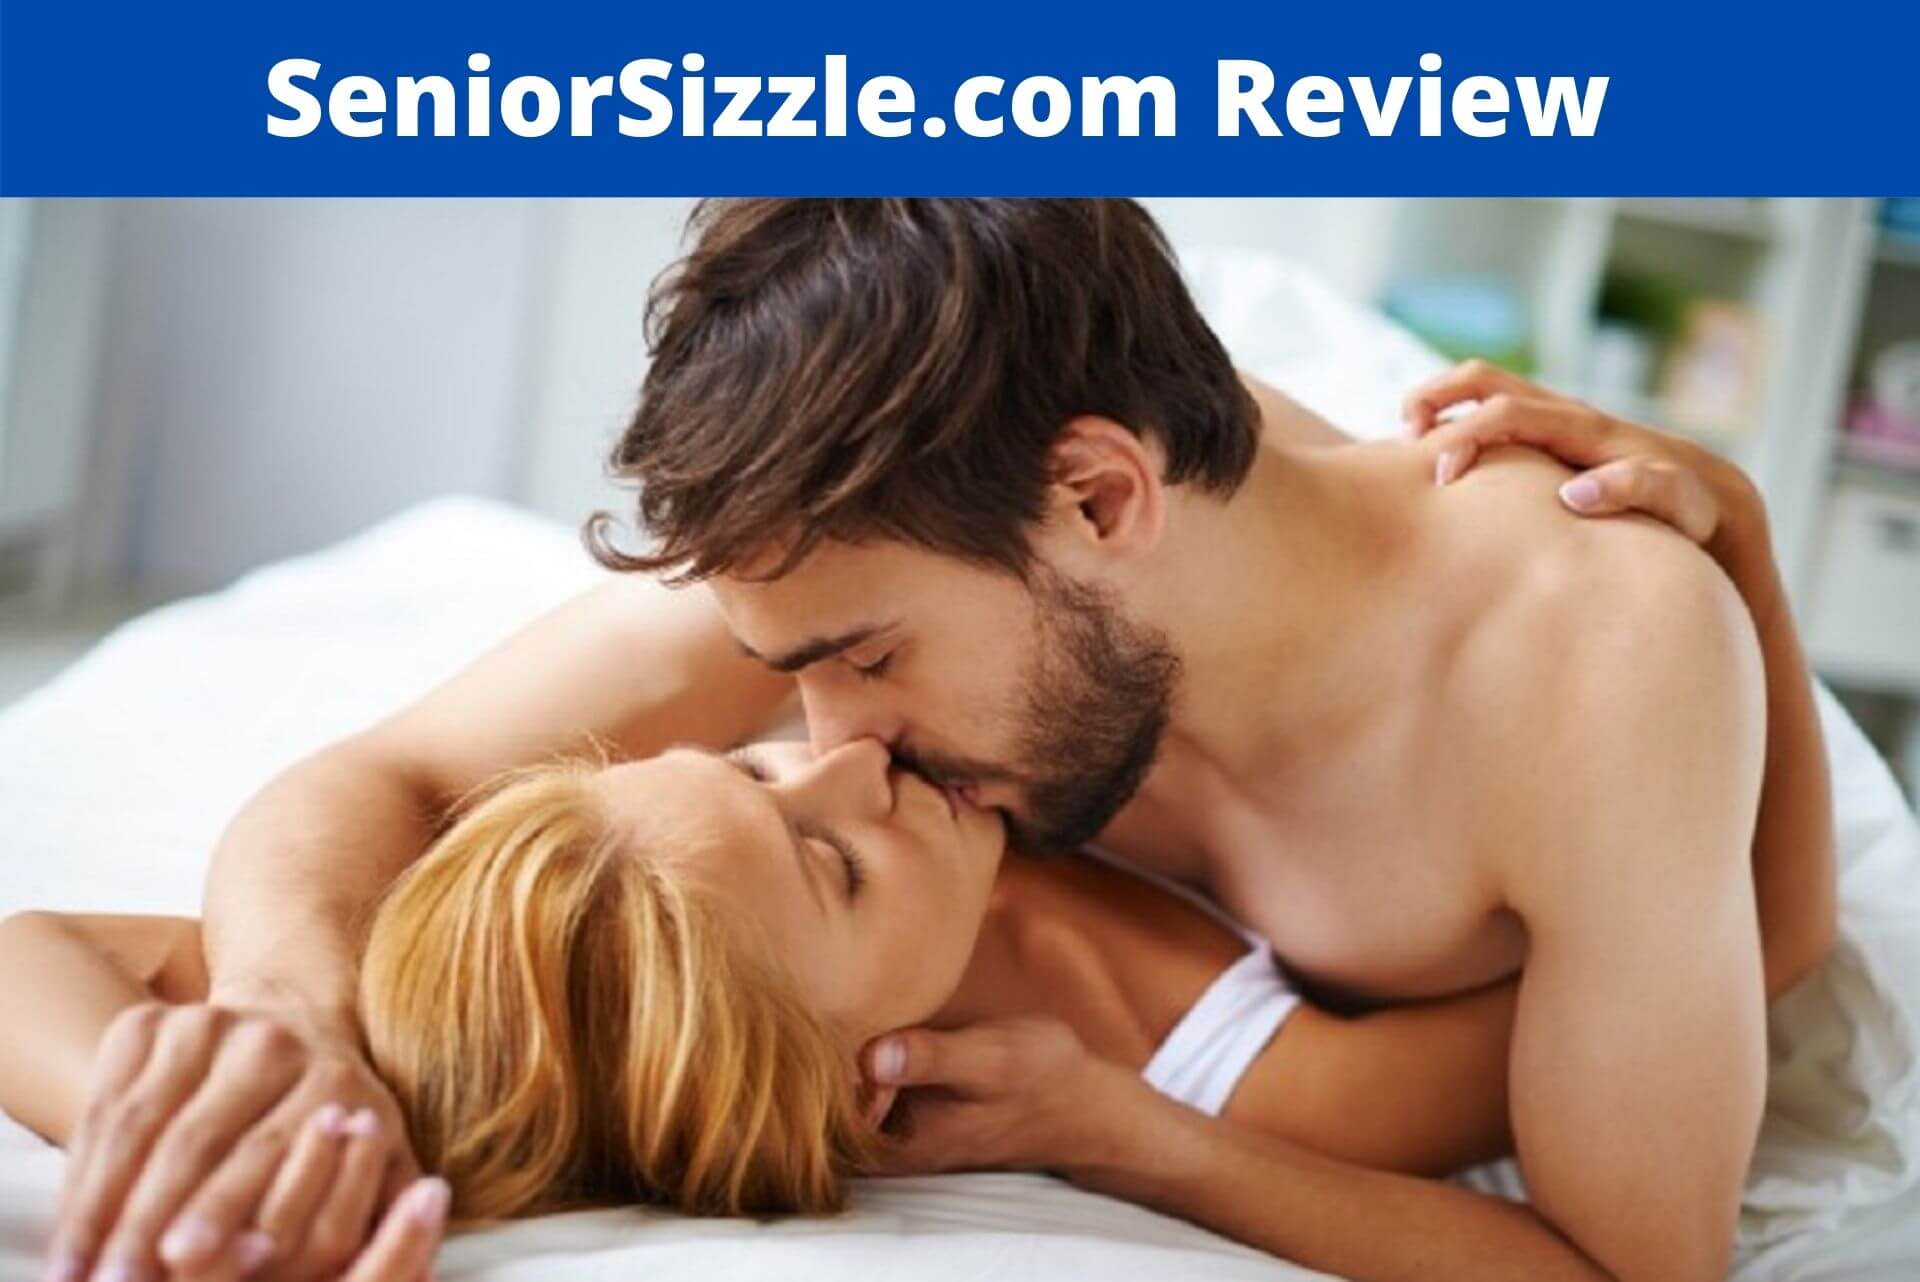 SeniorSizzle.com Review